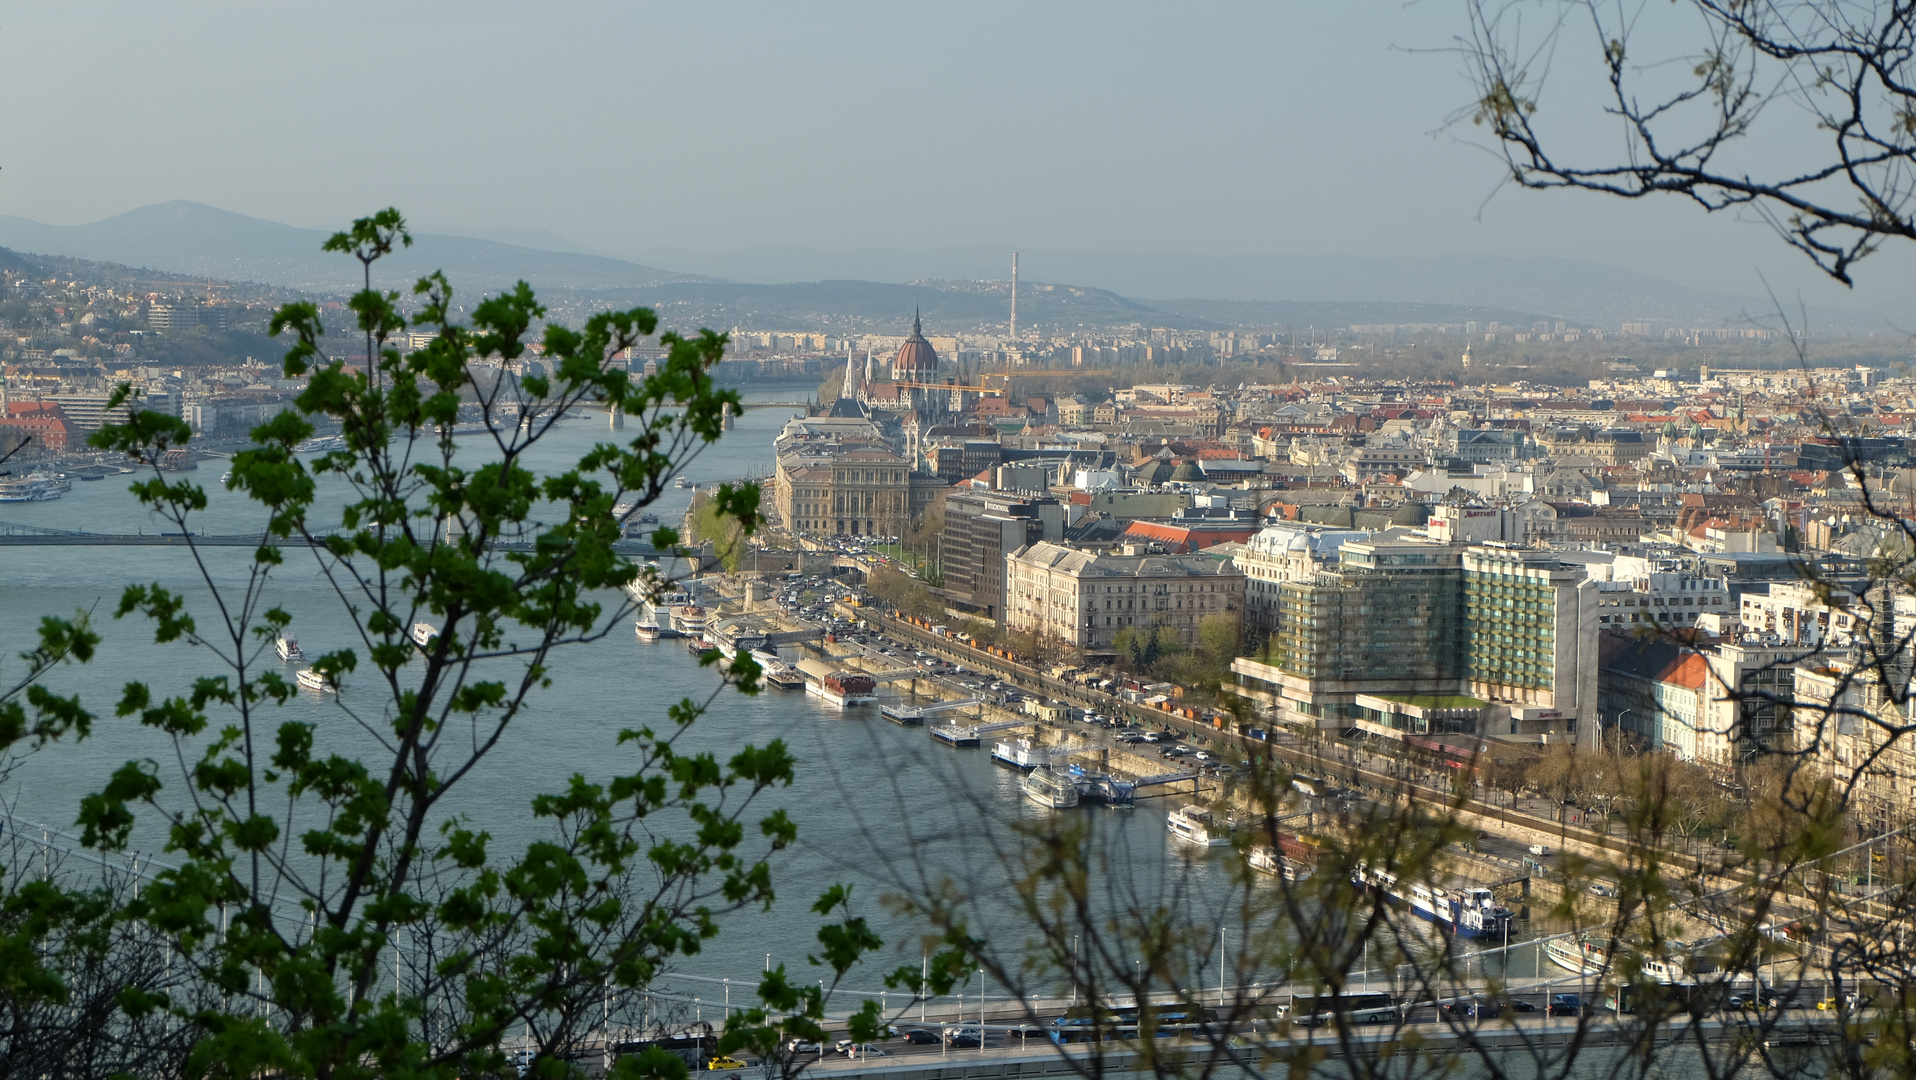 Budapest (3) Blick auf die Stadt und die Donau / Vue sur la ville et le danube